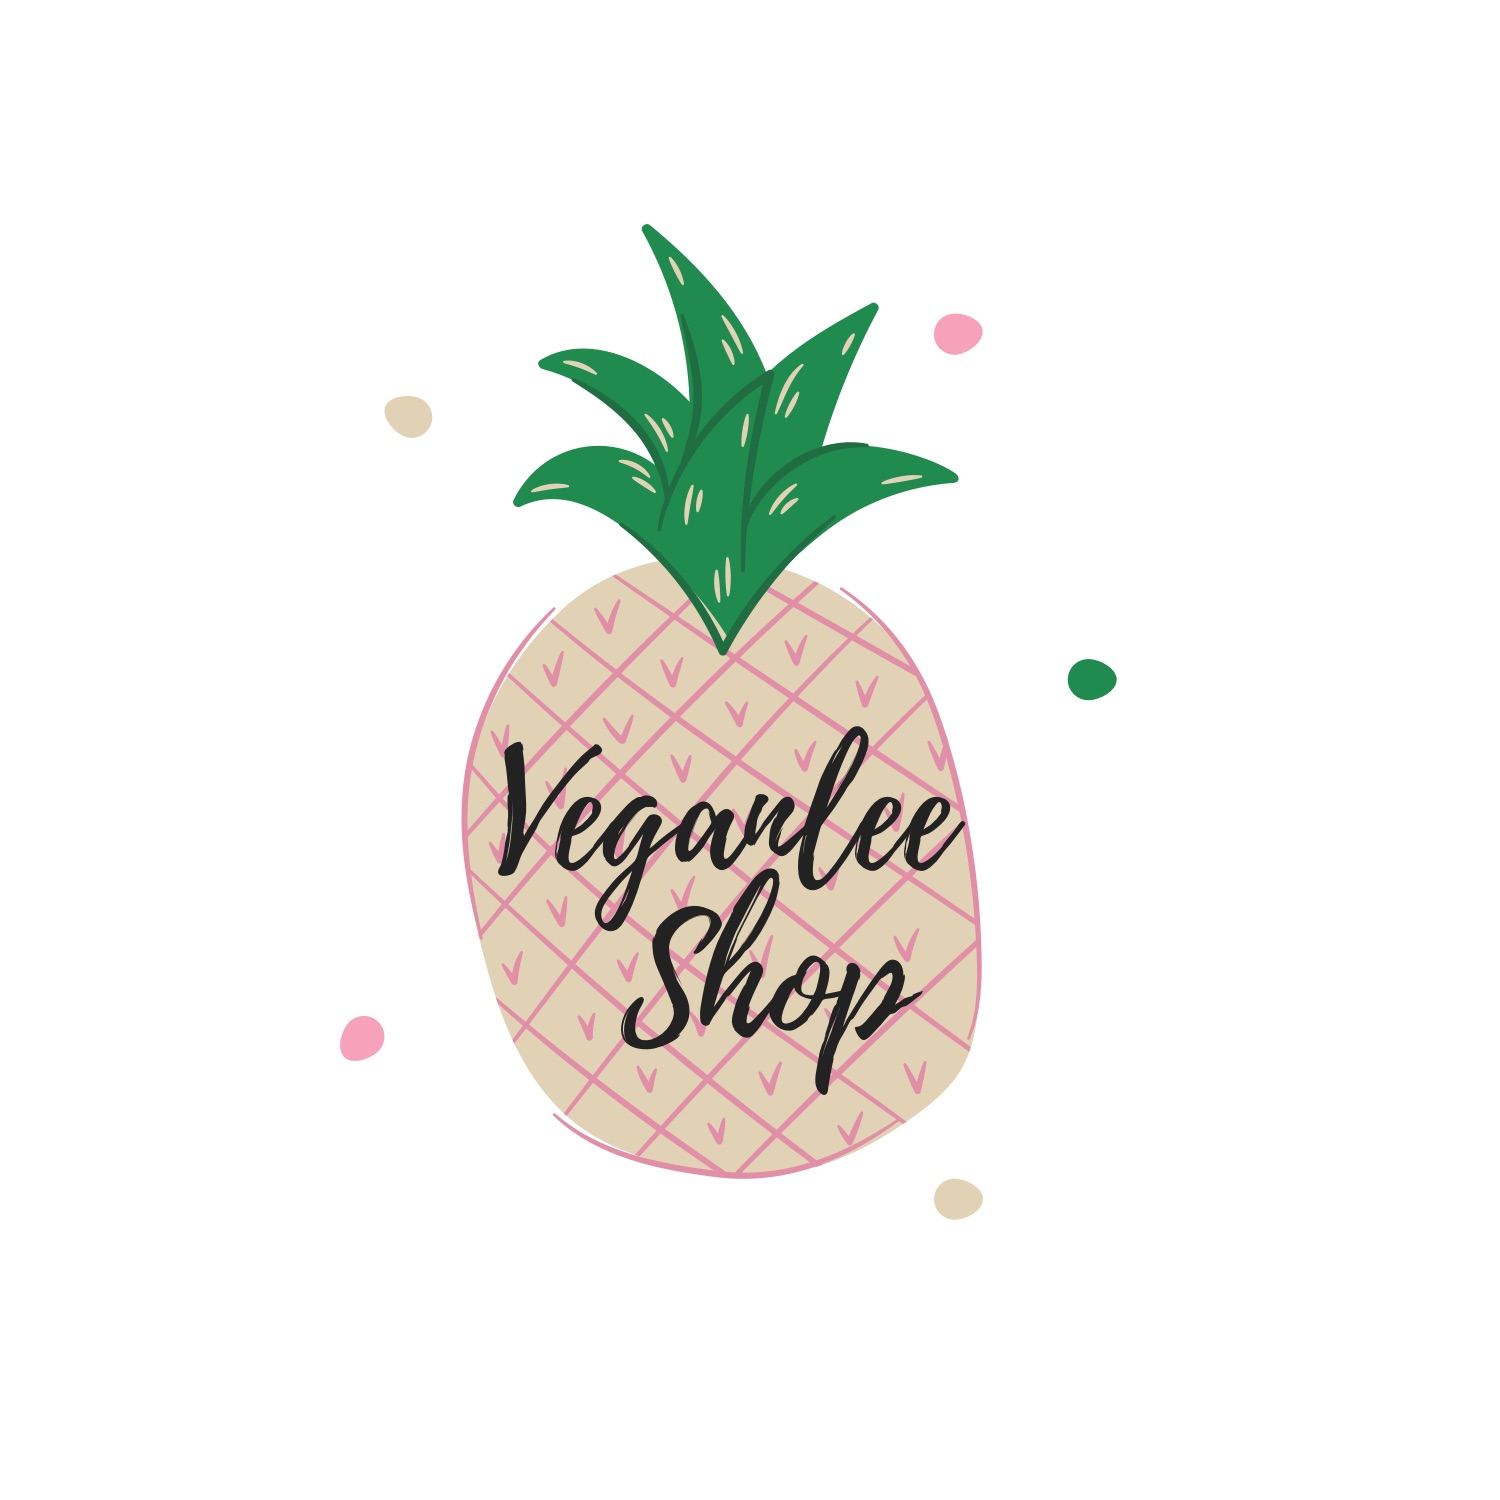 Veganlee logo - pineapple